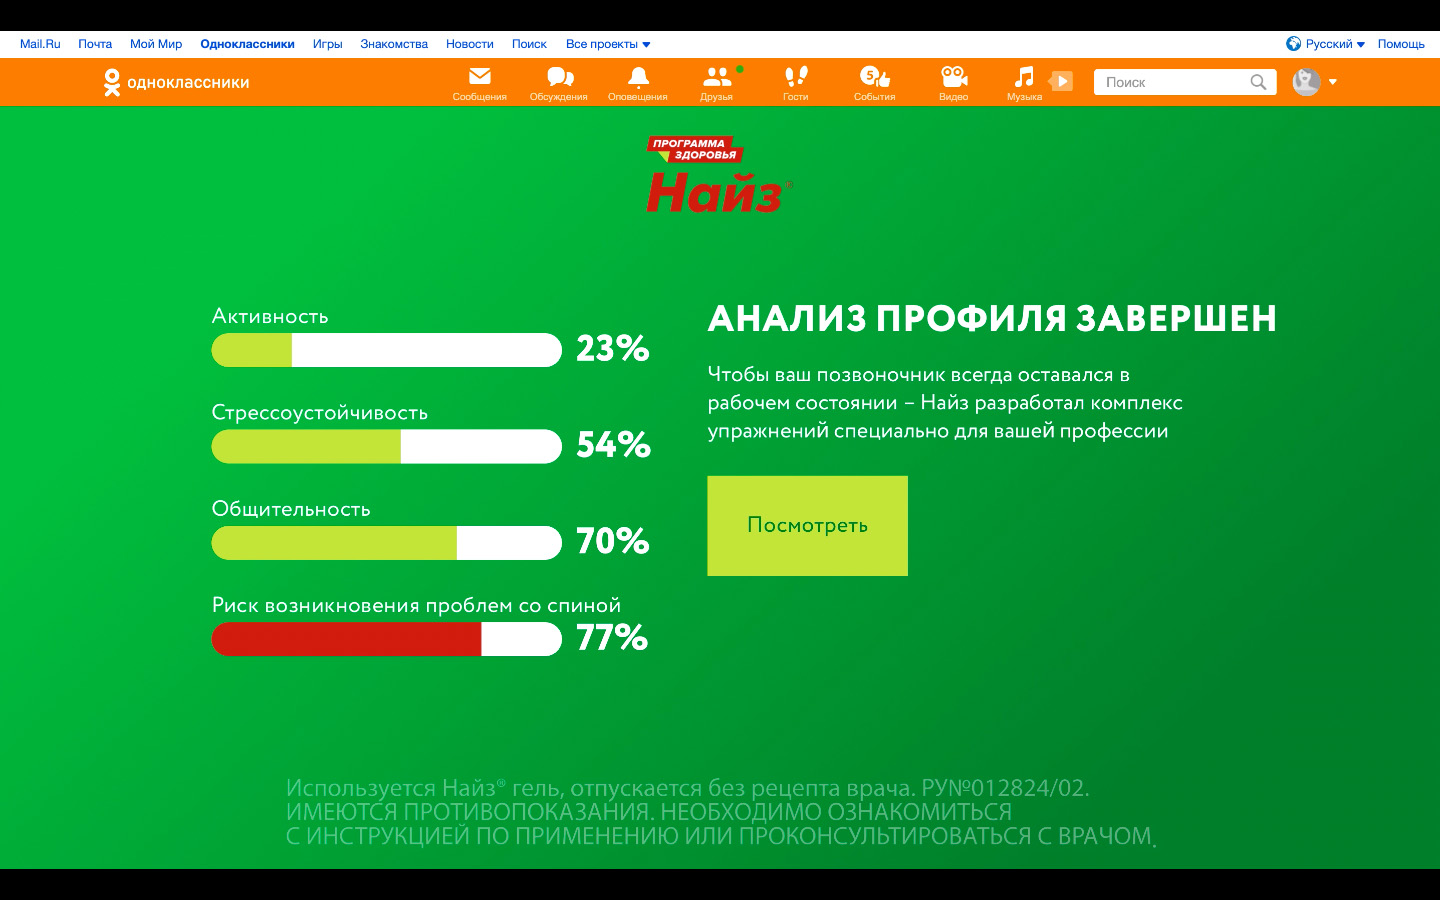 Результаты анализатора профиля в Одноклассниках